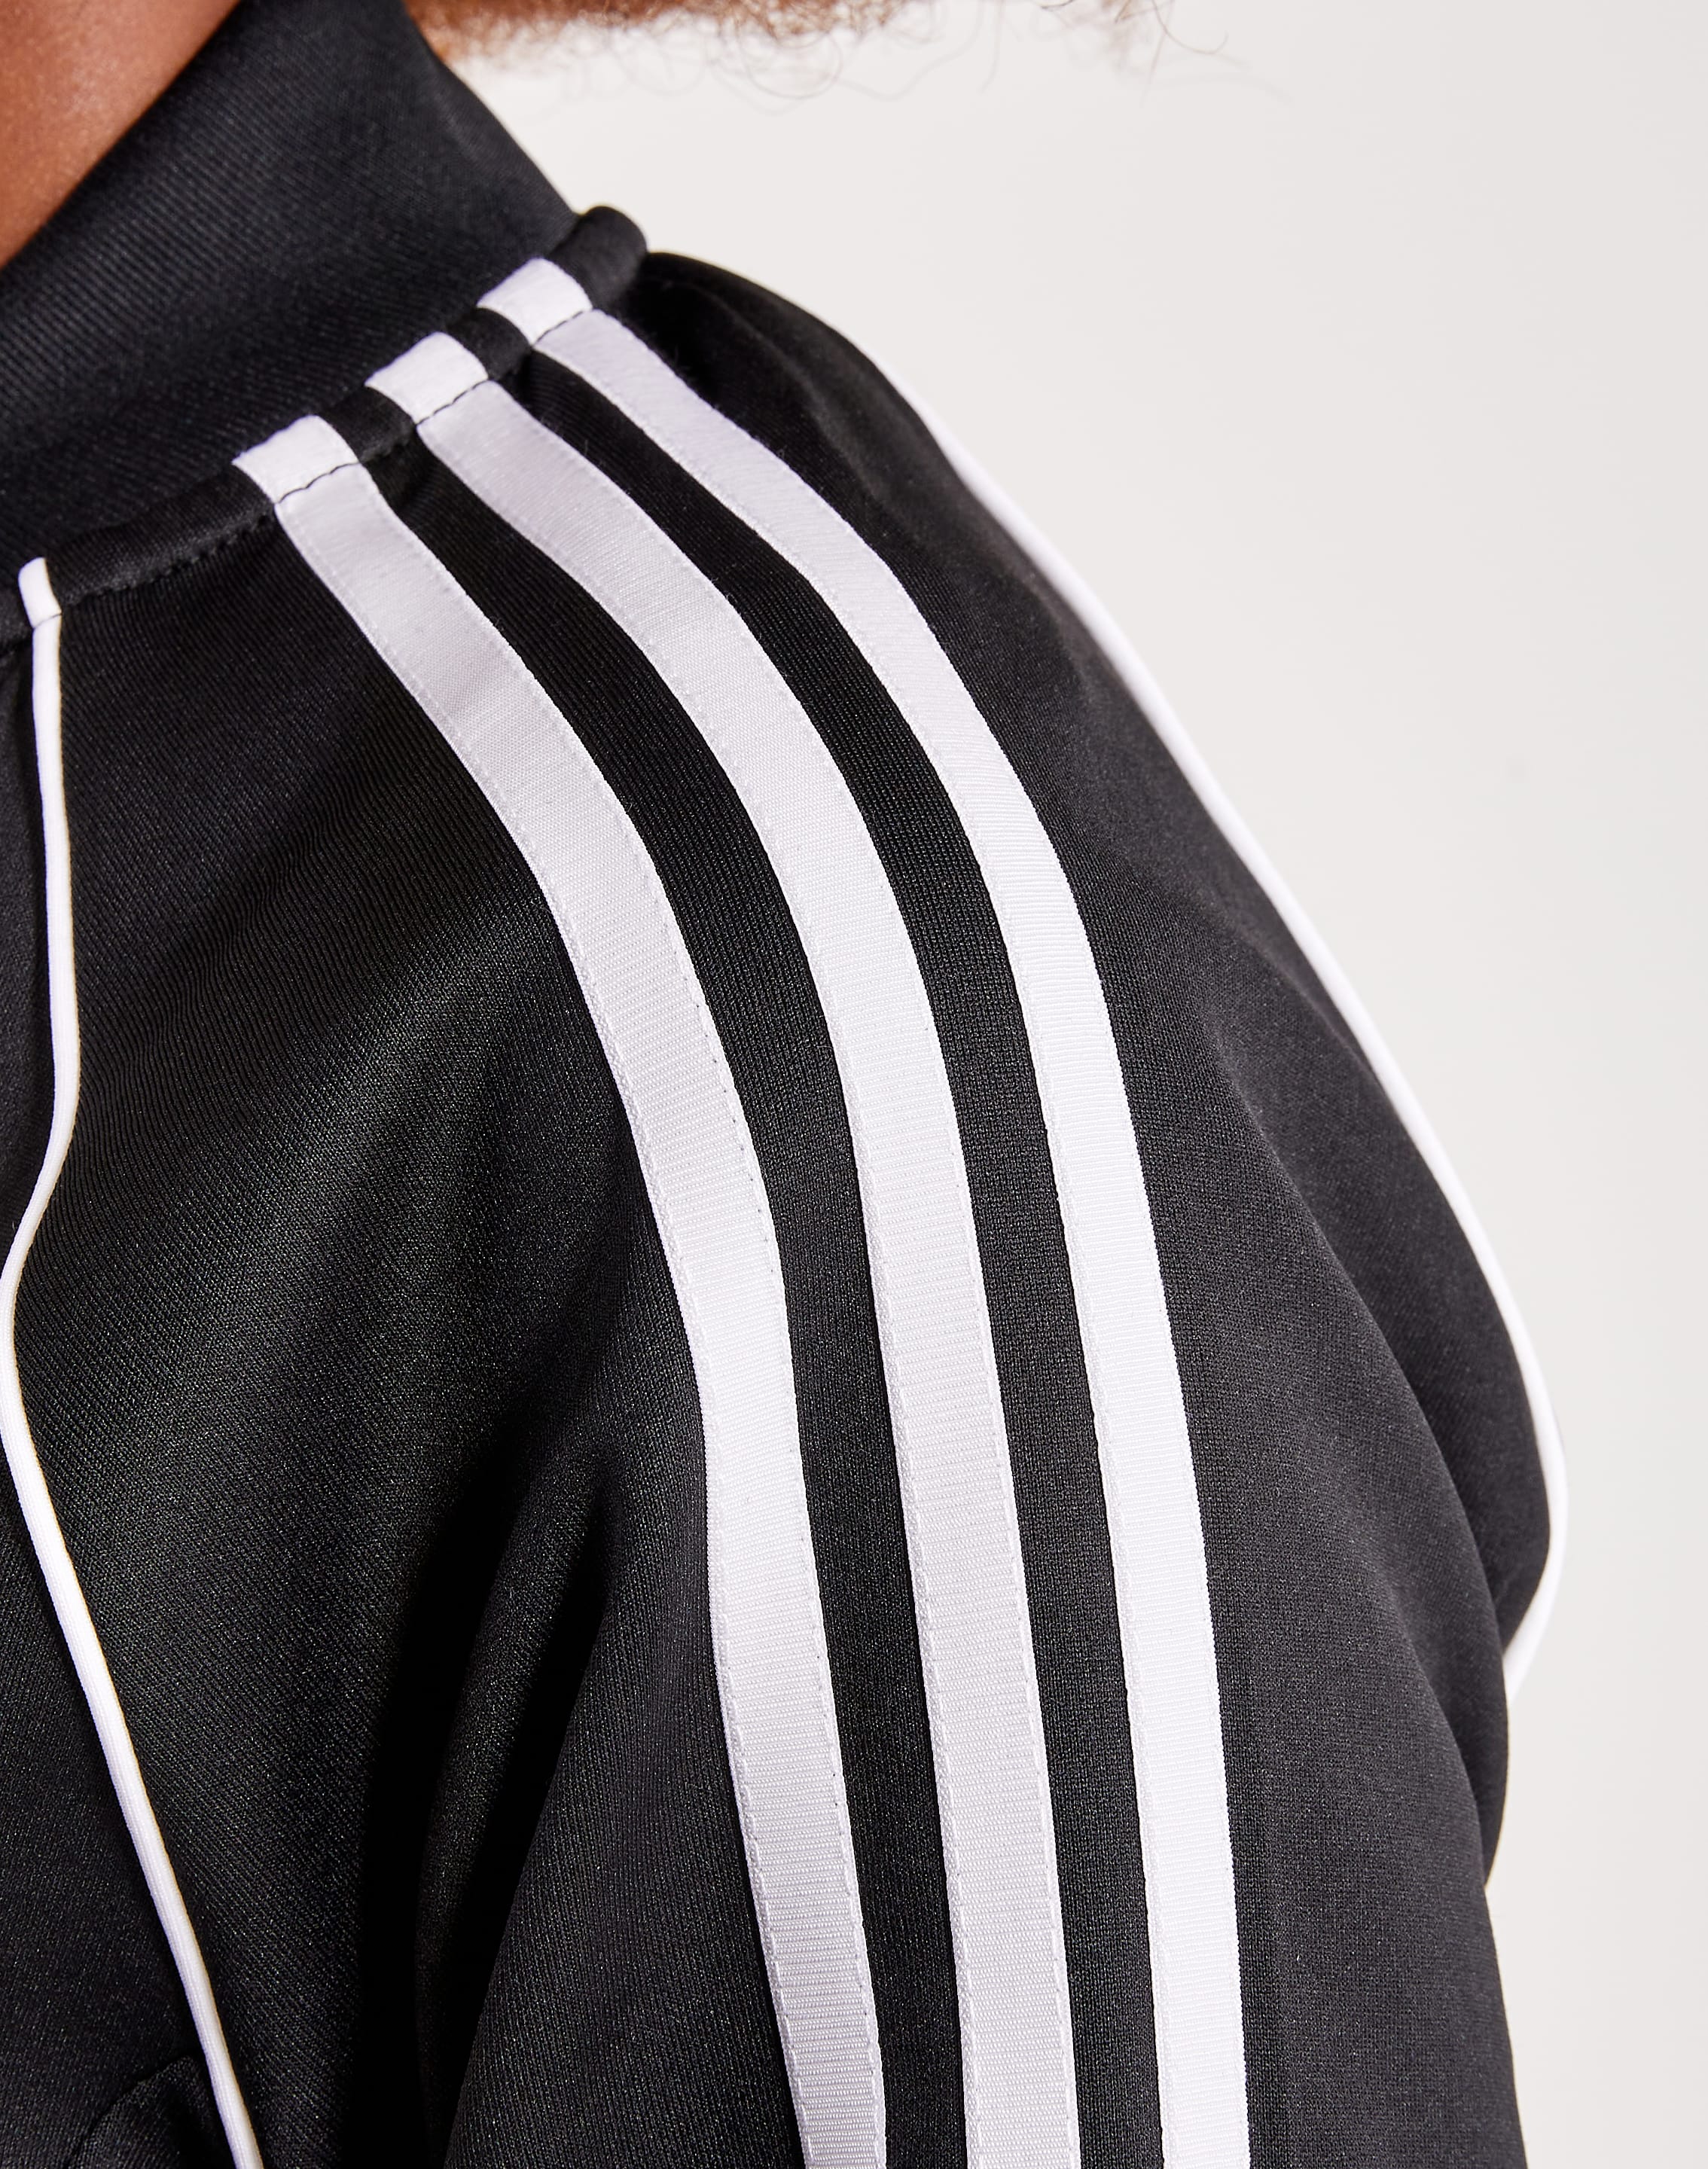 Adidas SST Track Jacket – DTLR